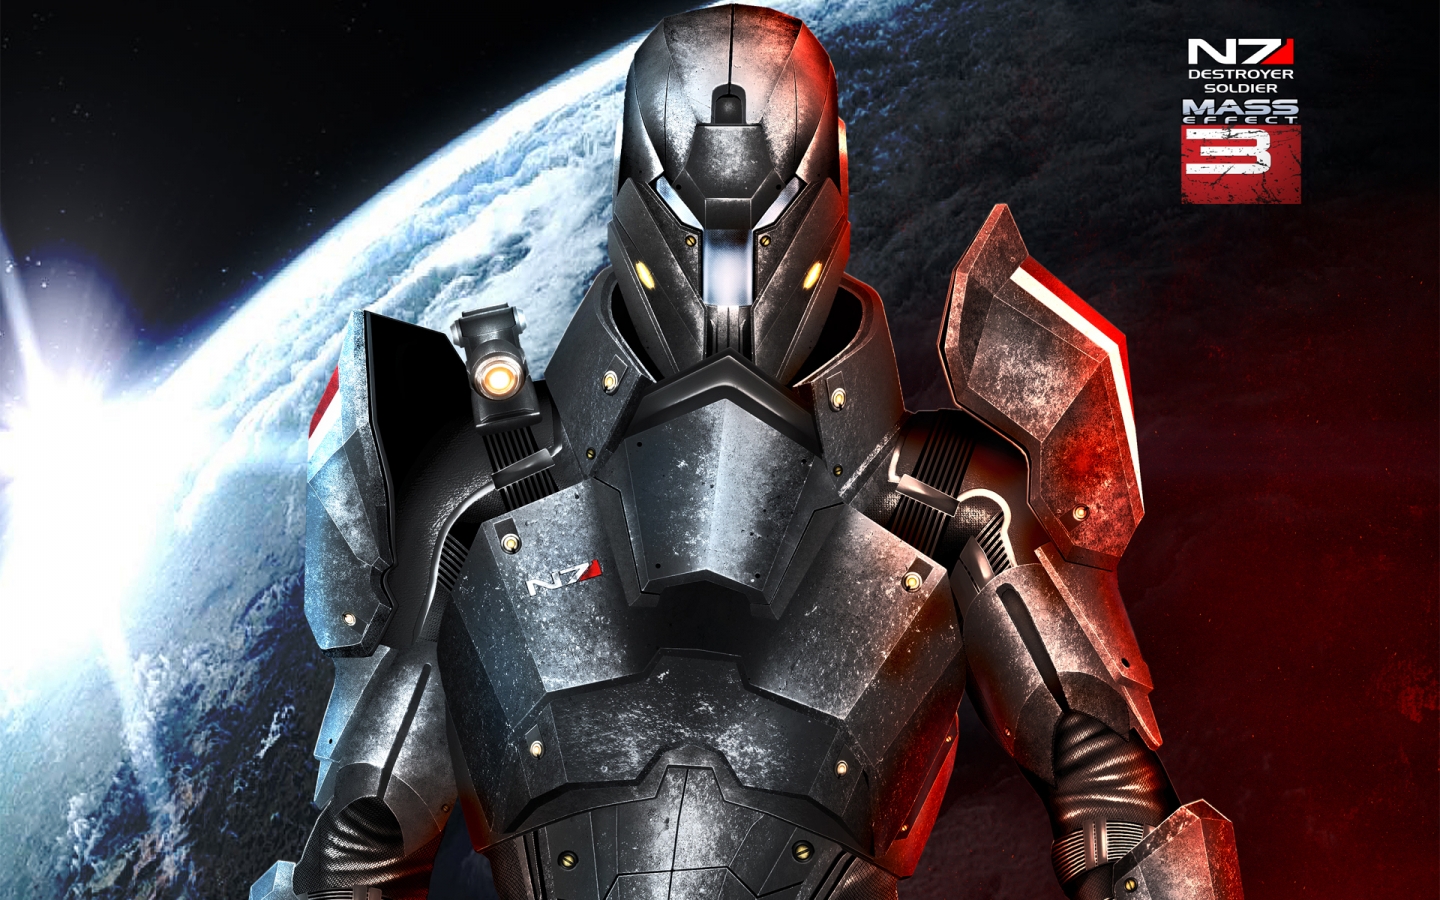 Mass Effect 3 Space Robot for 1440 x 900 widescreen resolution